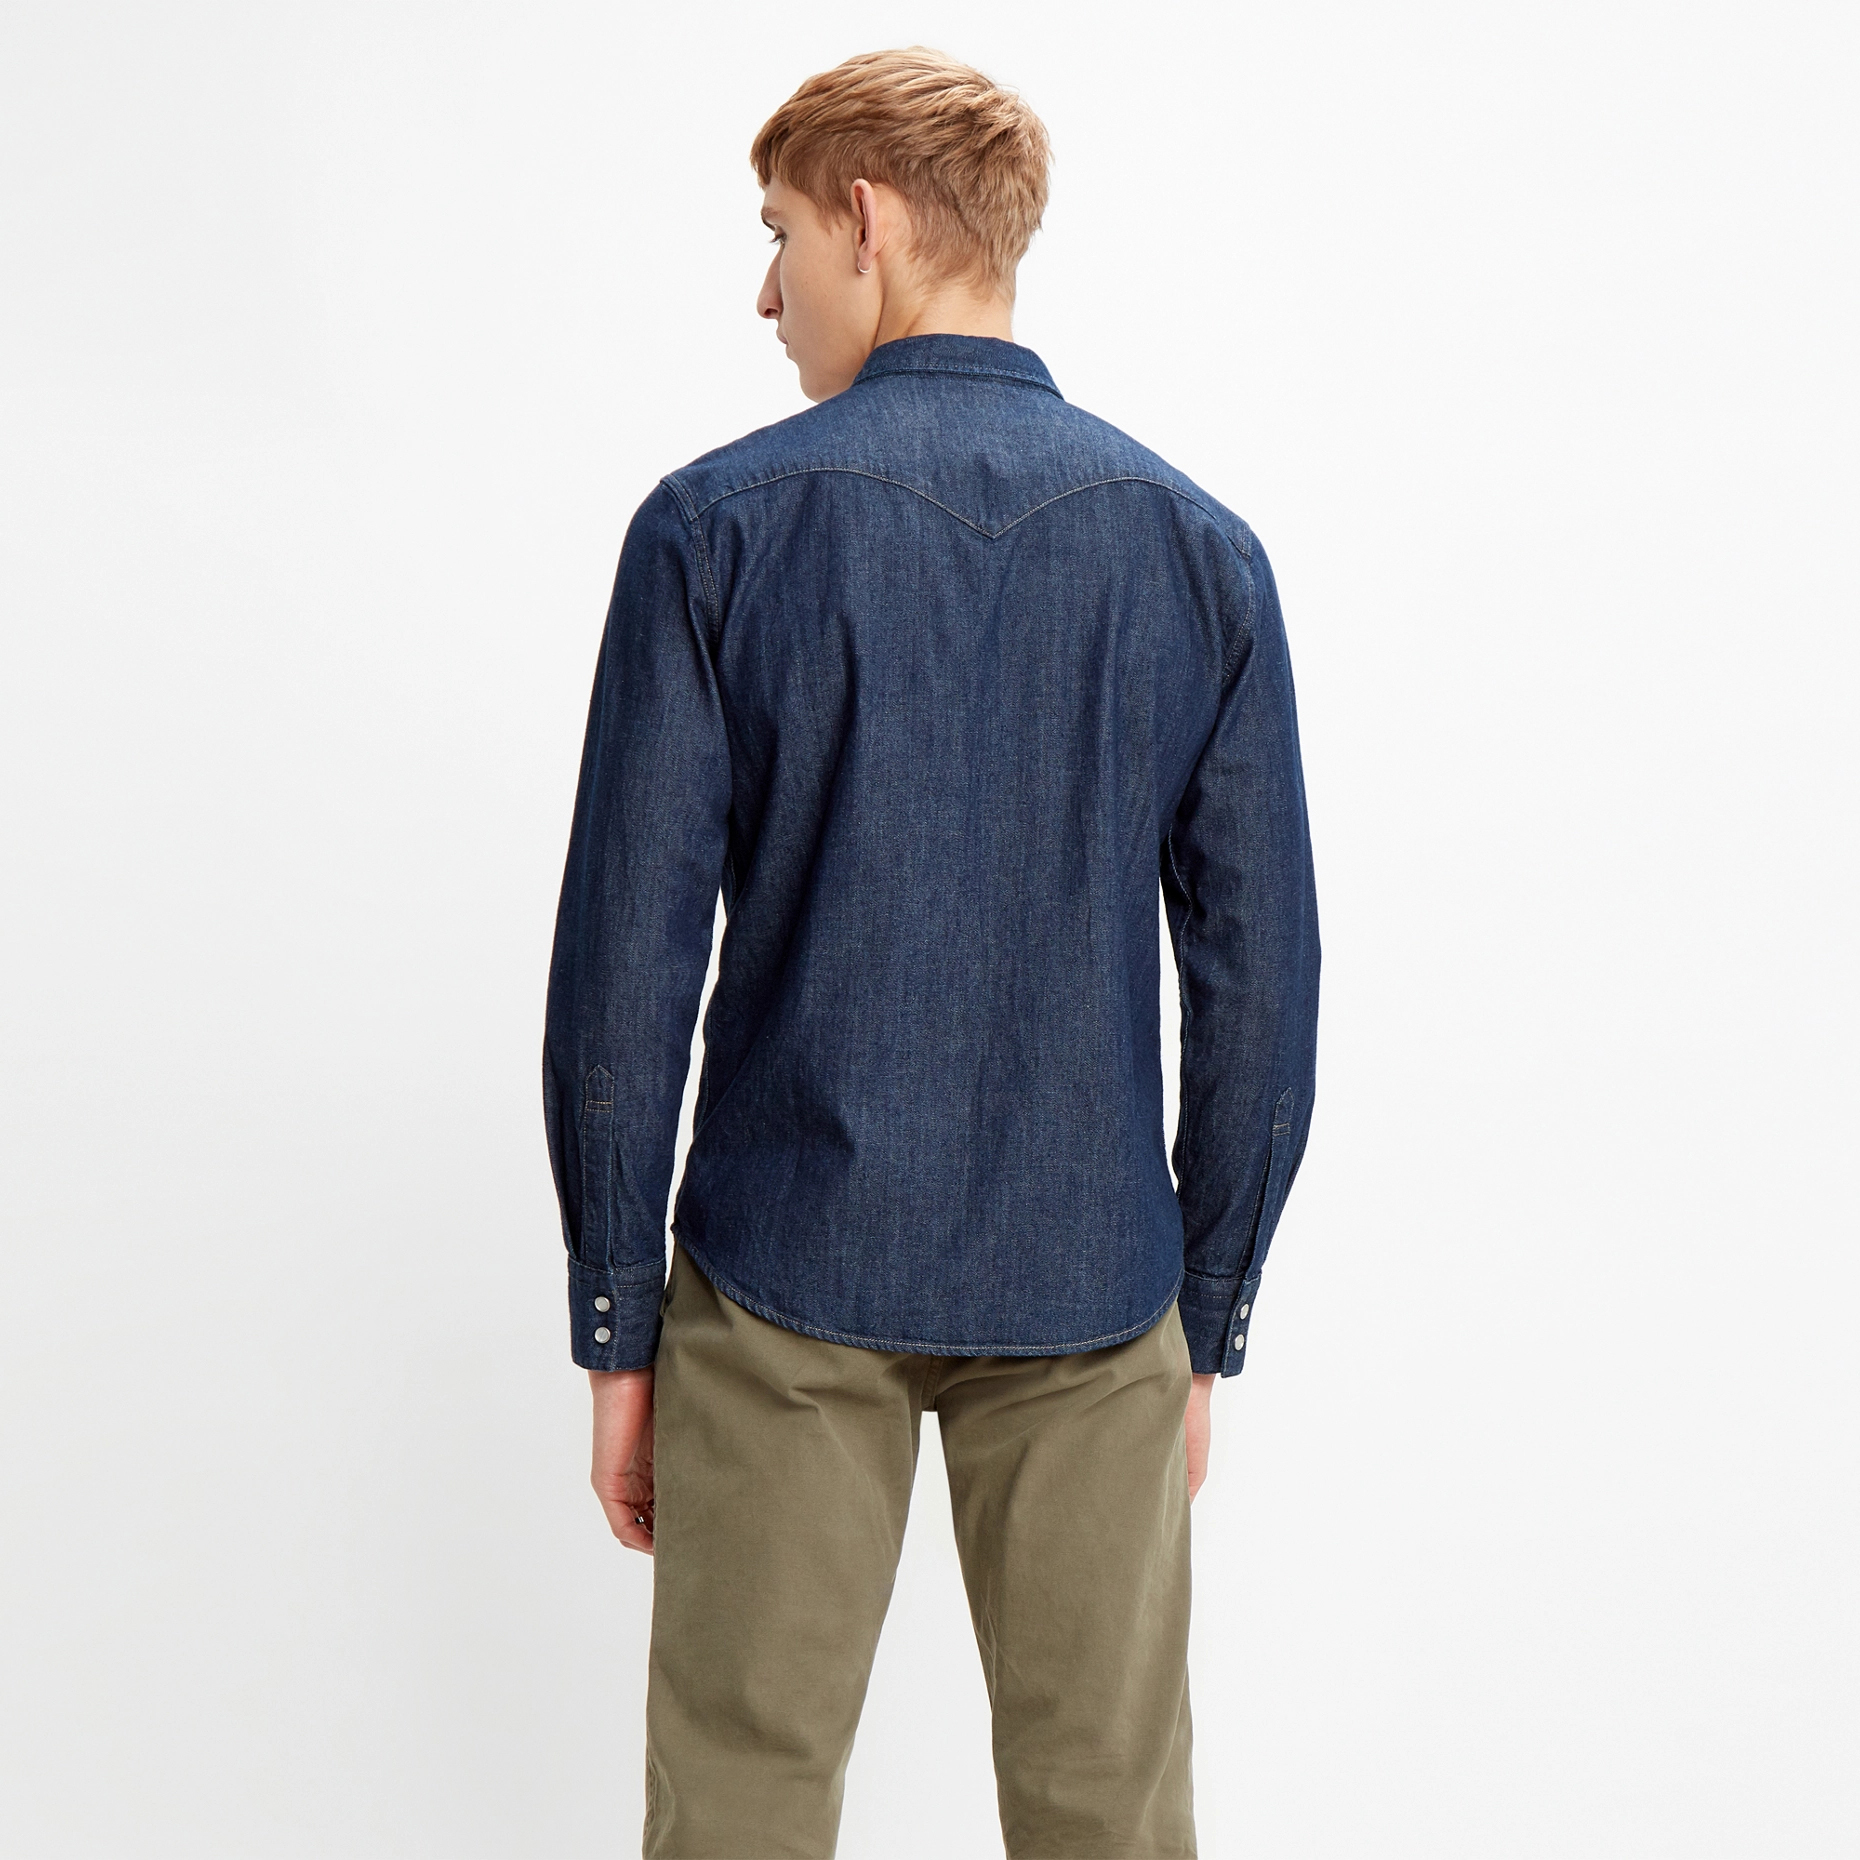 Джинсовая рубашка мужская Levi's 85744-0000 синяя L